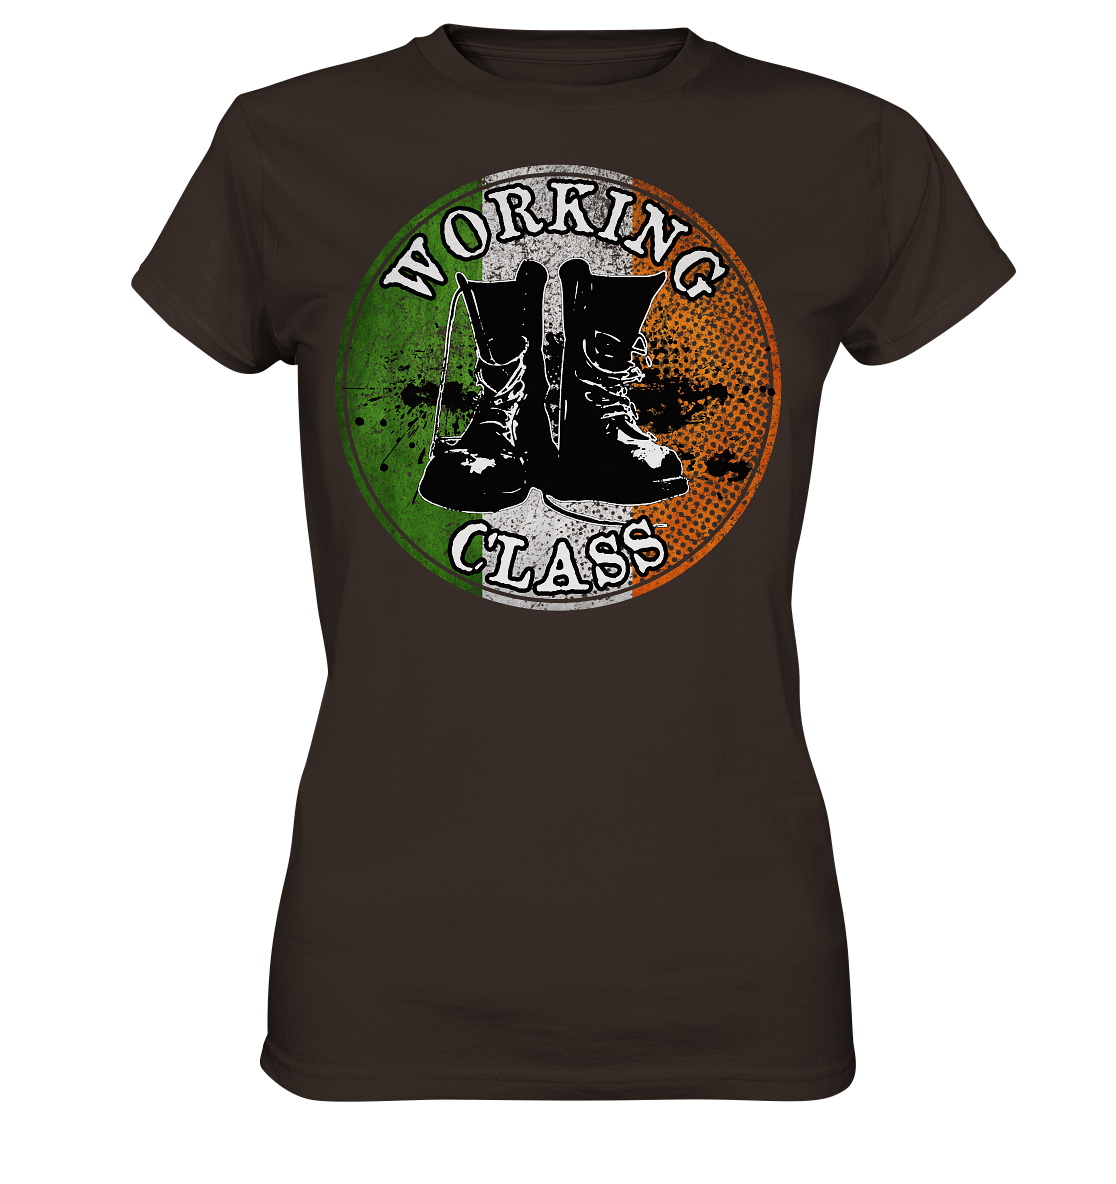 Working Class "Ireland" - Ladies Premium Shirt